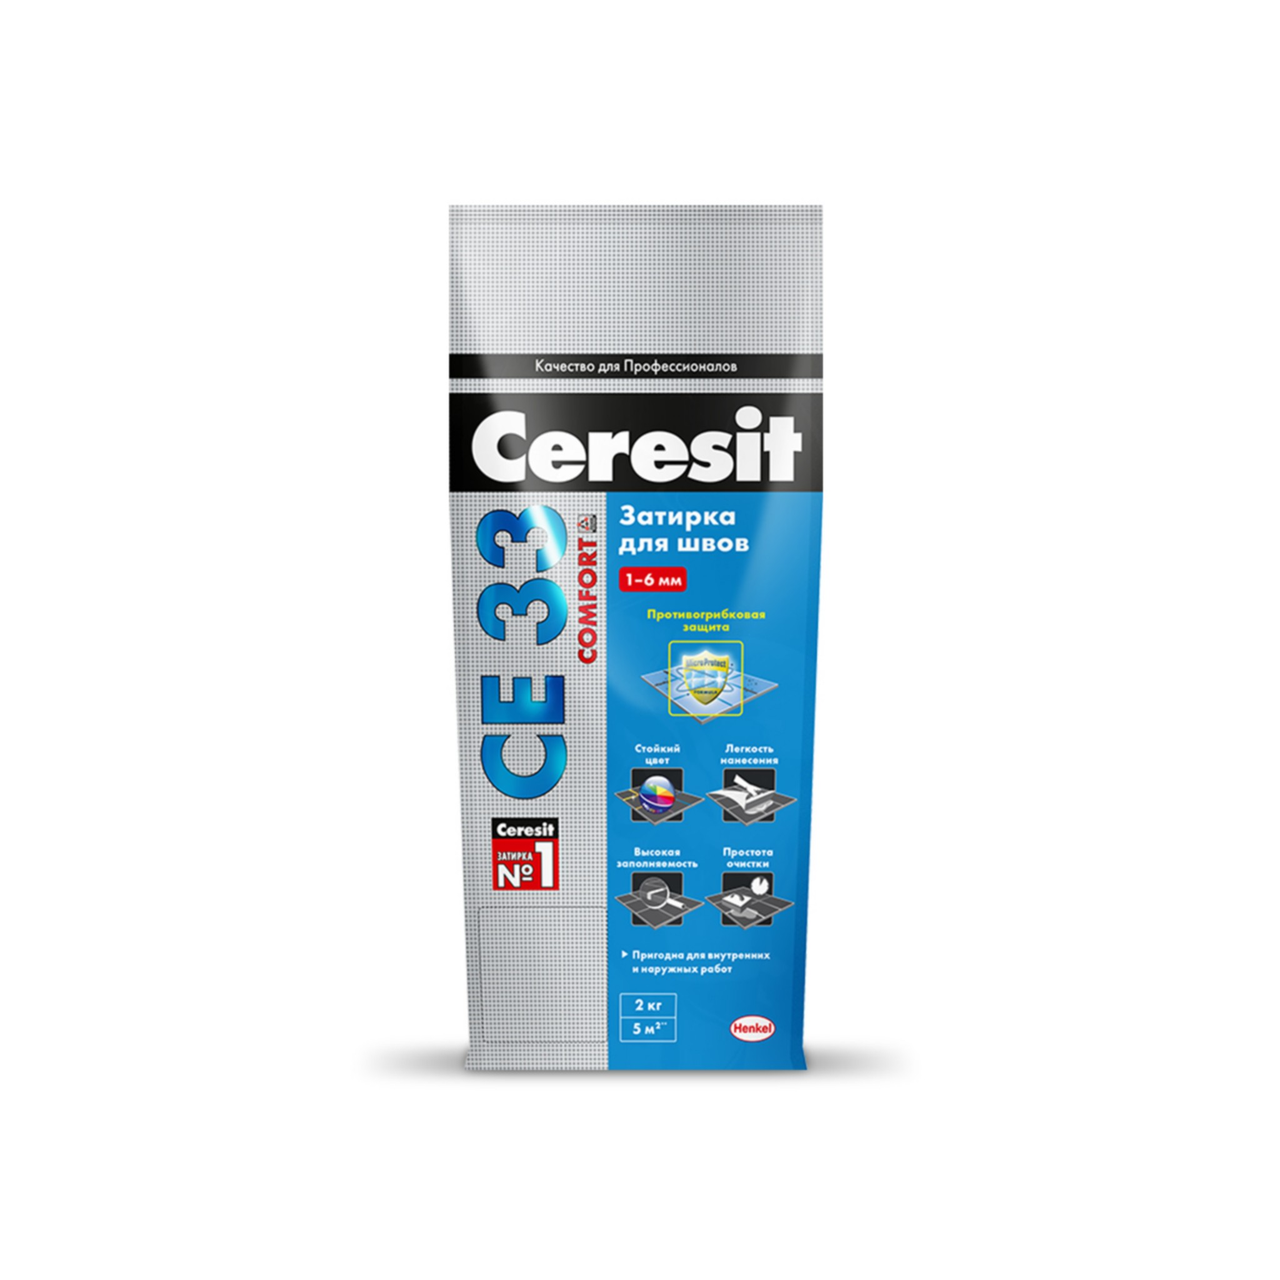 Ceresit  CE 33 Comfort затирка для узких швов, цвет: Антрацит (Anthracite), 2 кг